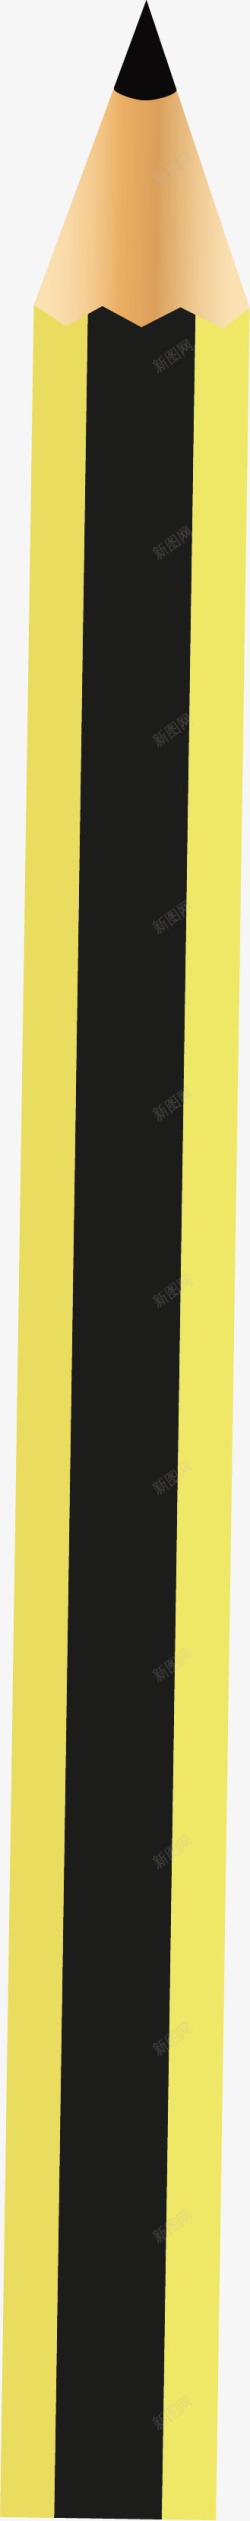 黑黄条纹卡通橡皮铅笔素材